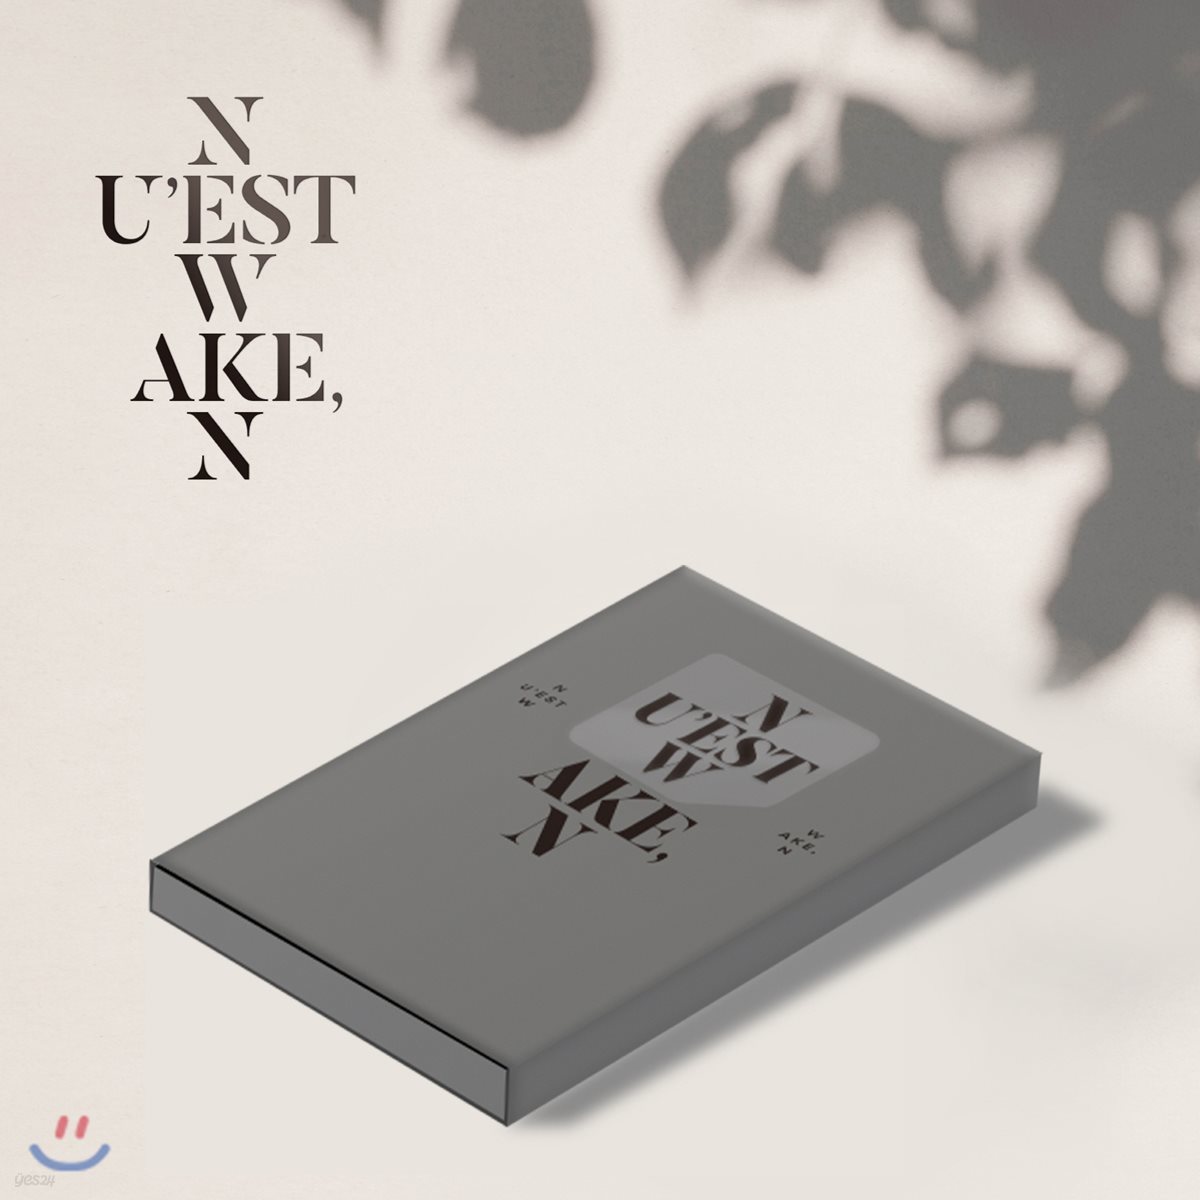 뉴이스트 W (NU’EST W) - [WAKE,N] [Ver. 3][스마트 뮤직 앨범(키노 앨범)]